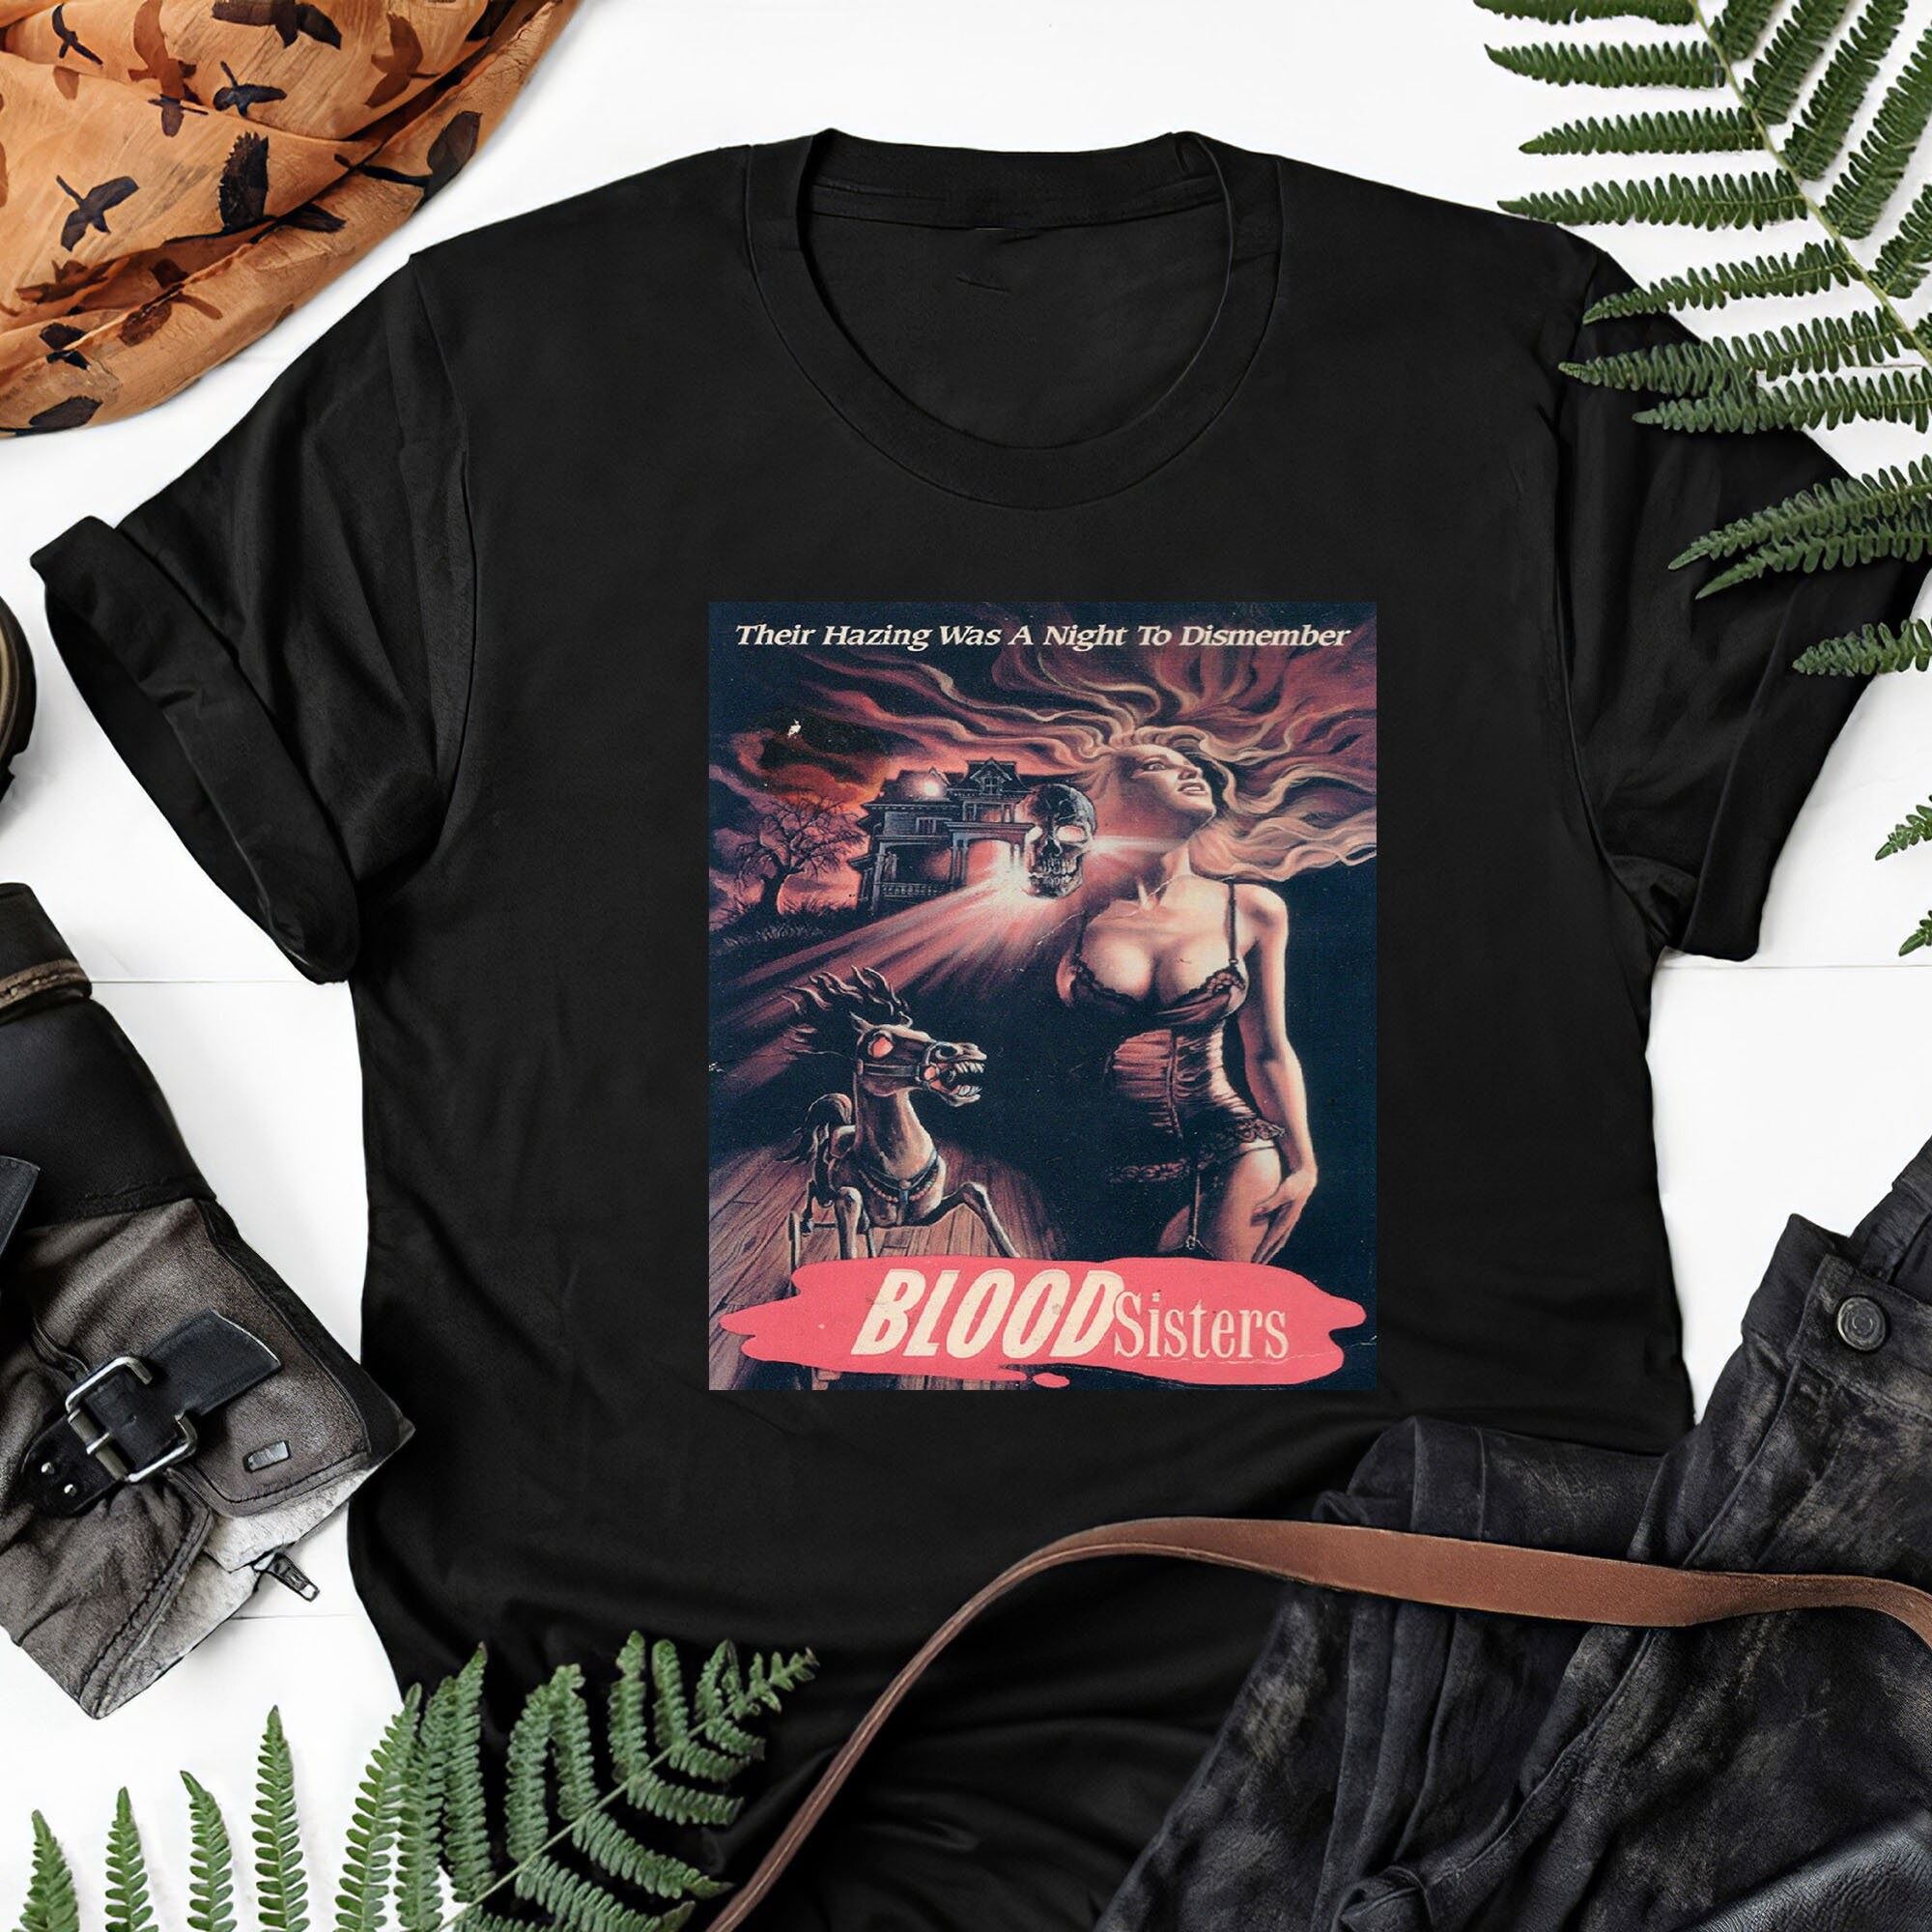 Blood Sisters Movie Poster Horror 80s Vhs Art Gift Tee For Men Women Unisex T-shirt